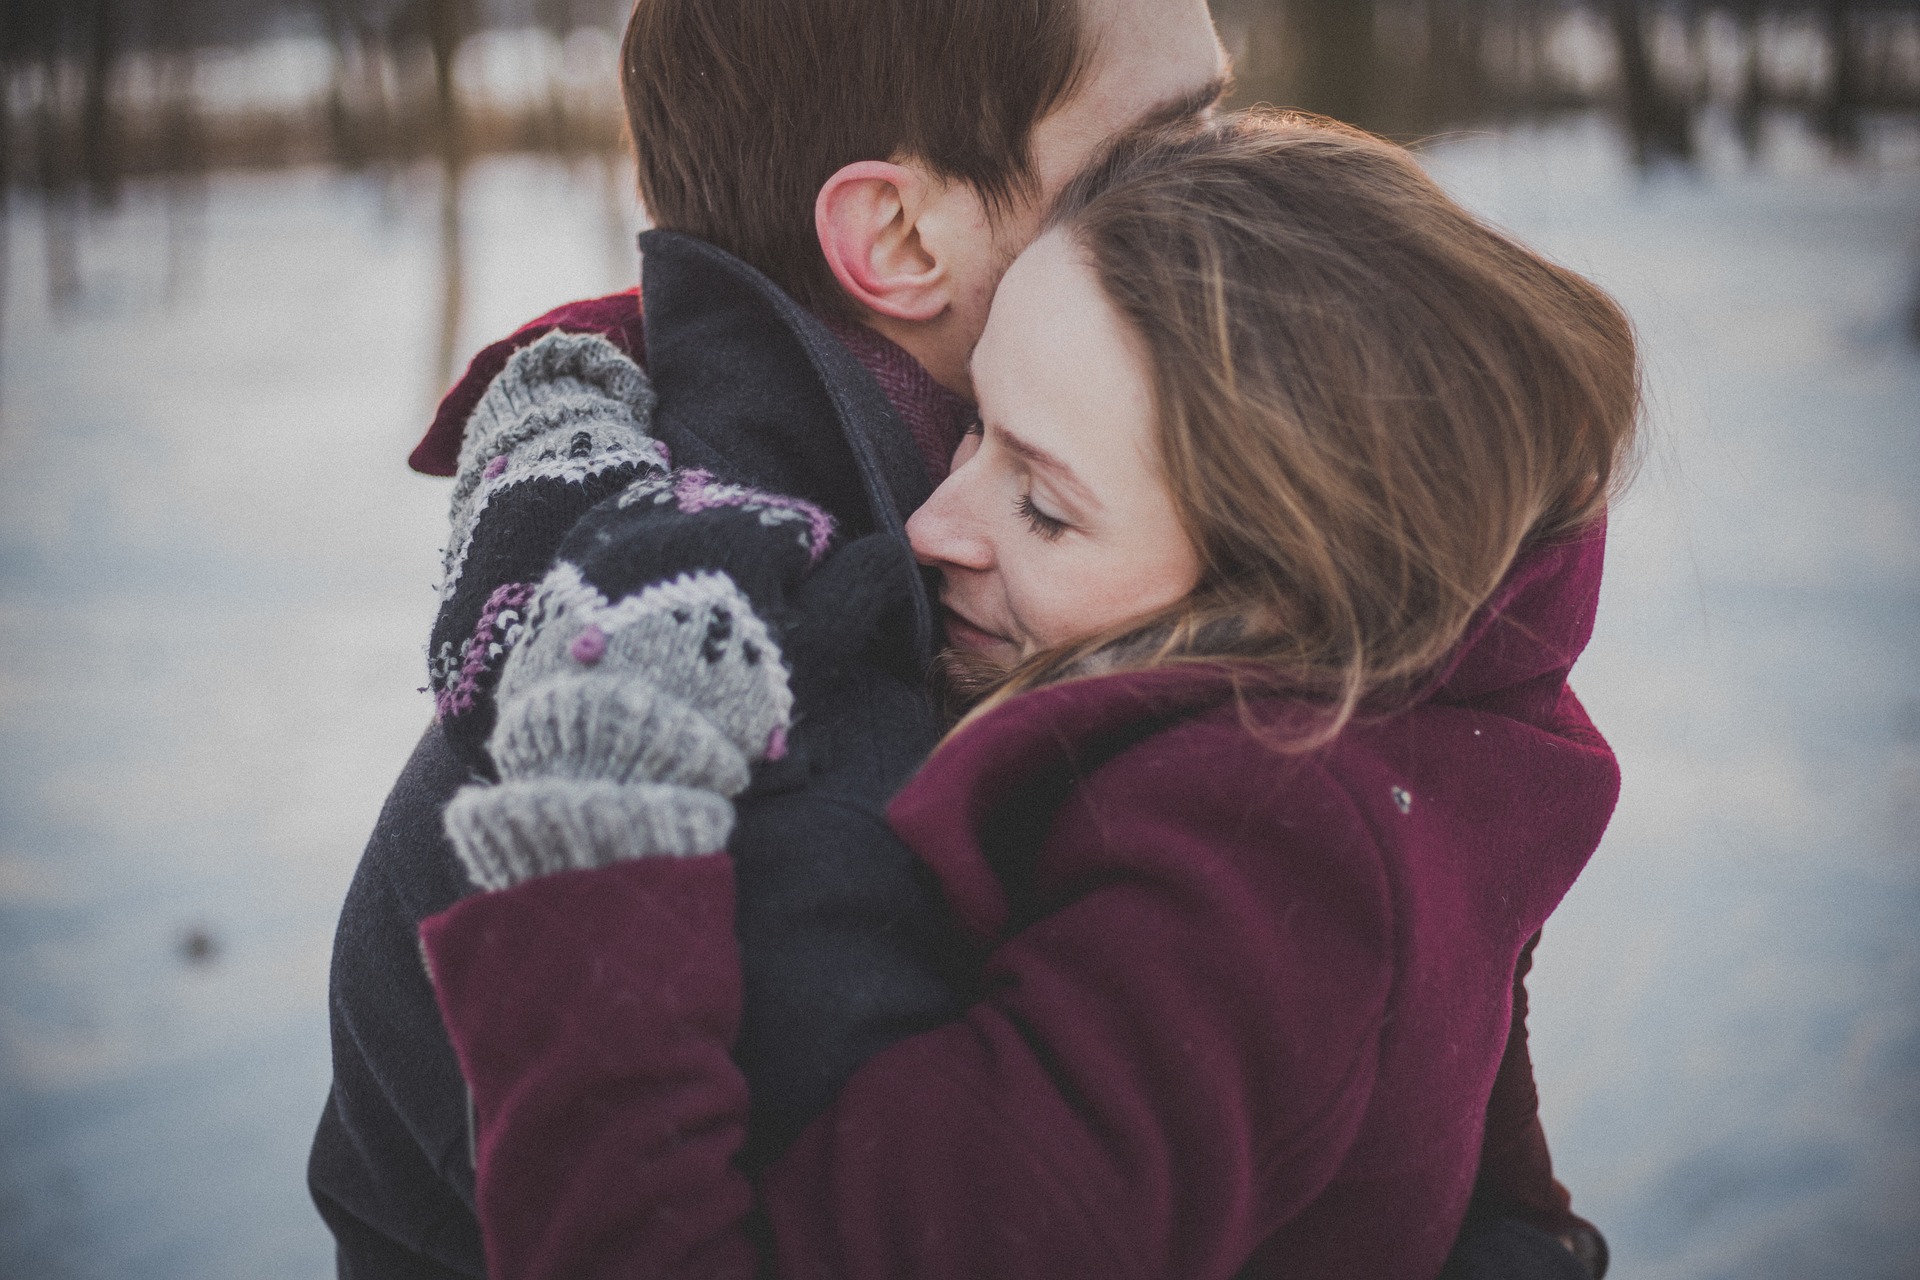 Um abraço no momento certo pode ser curativo, afirma pesquisa